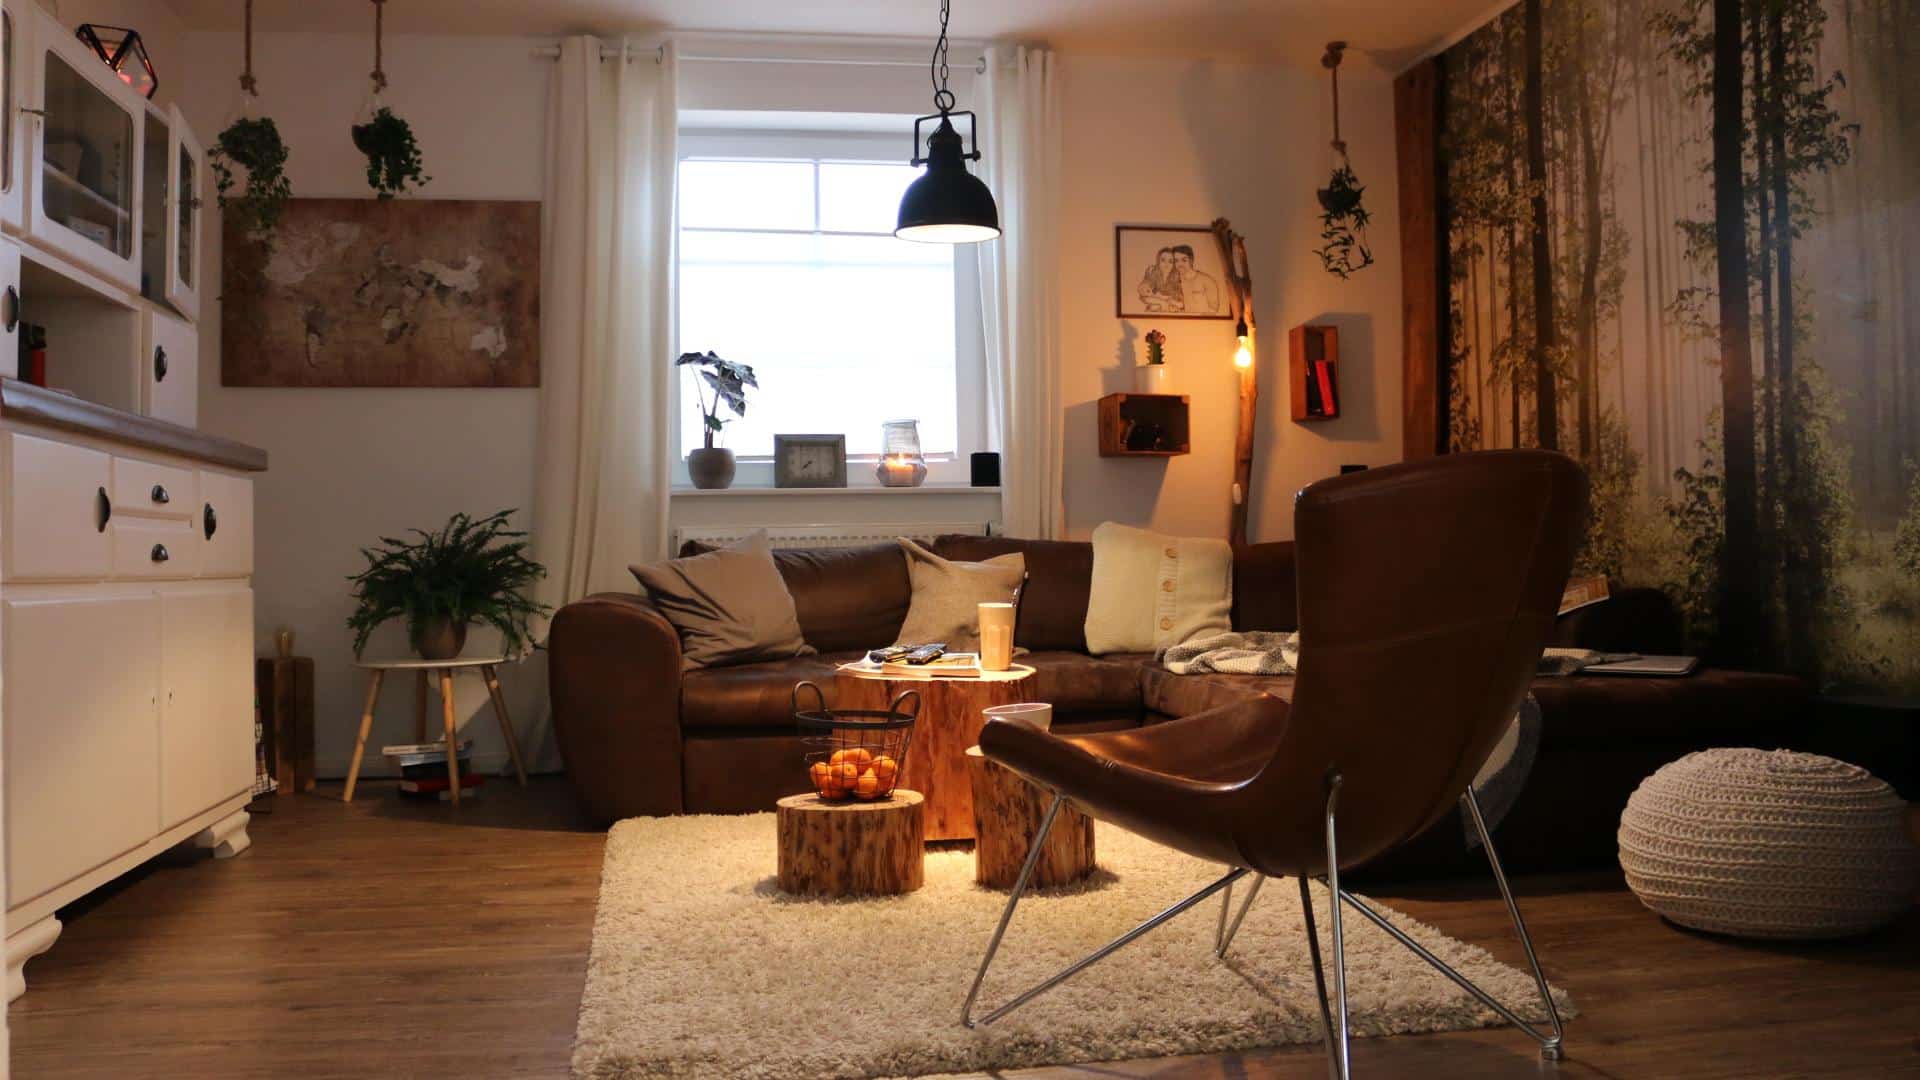 ᐅ Wohnzimmer Einrichten Gestalten Room Makeover Diy